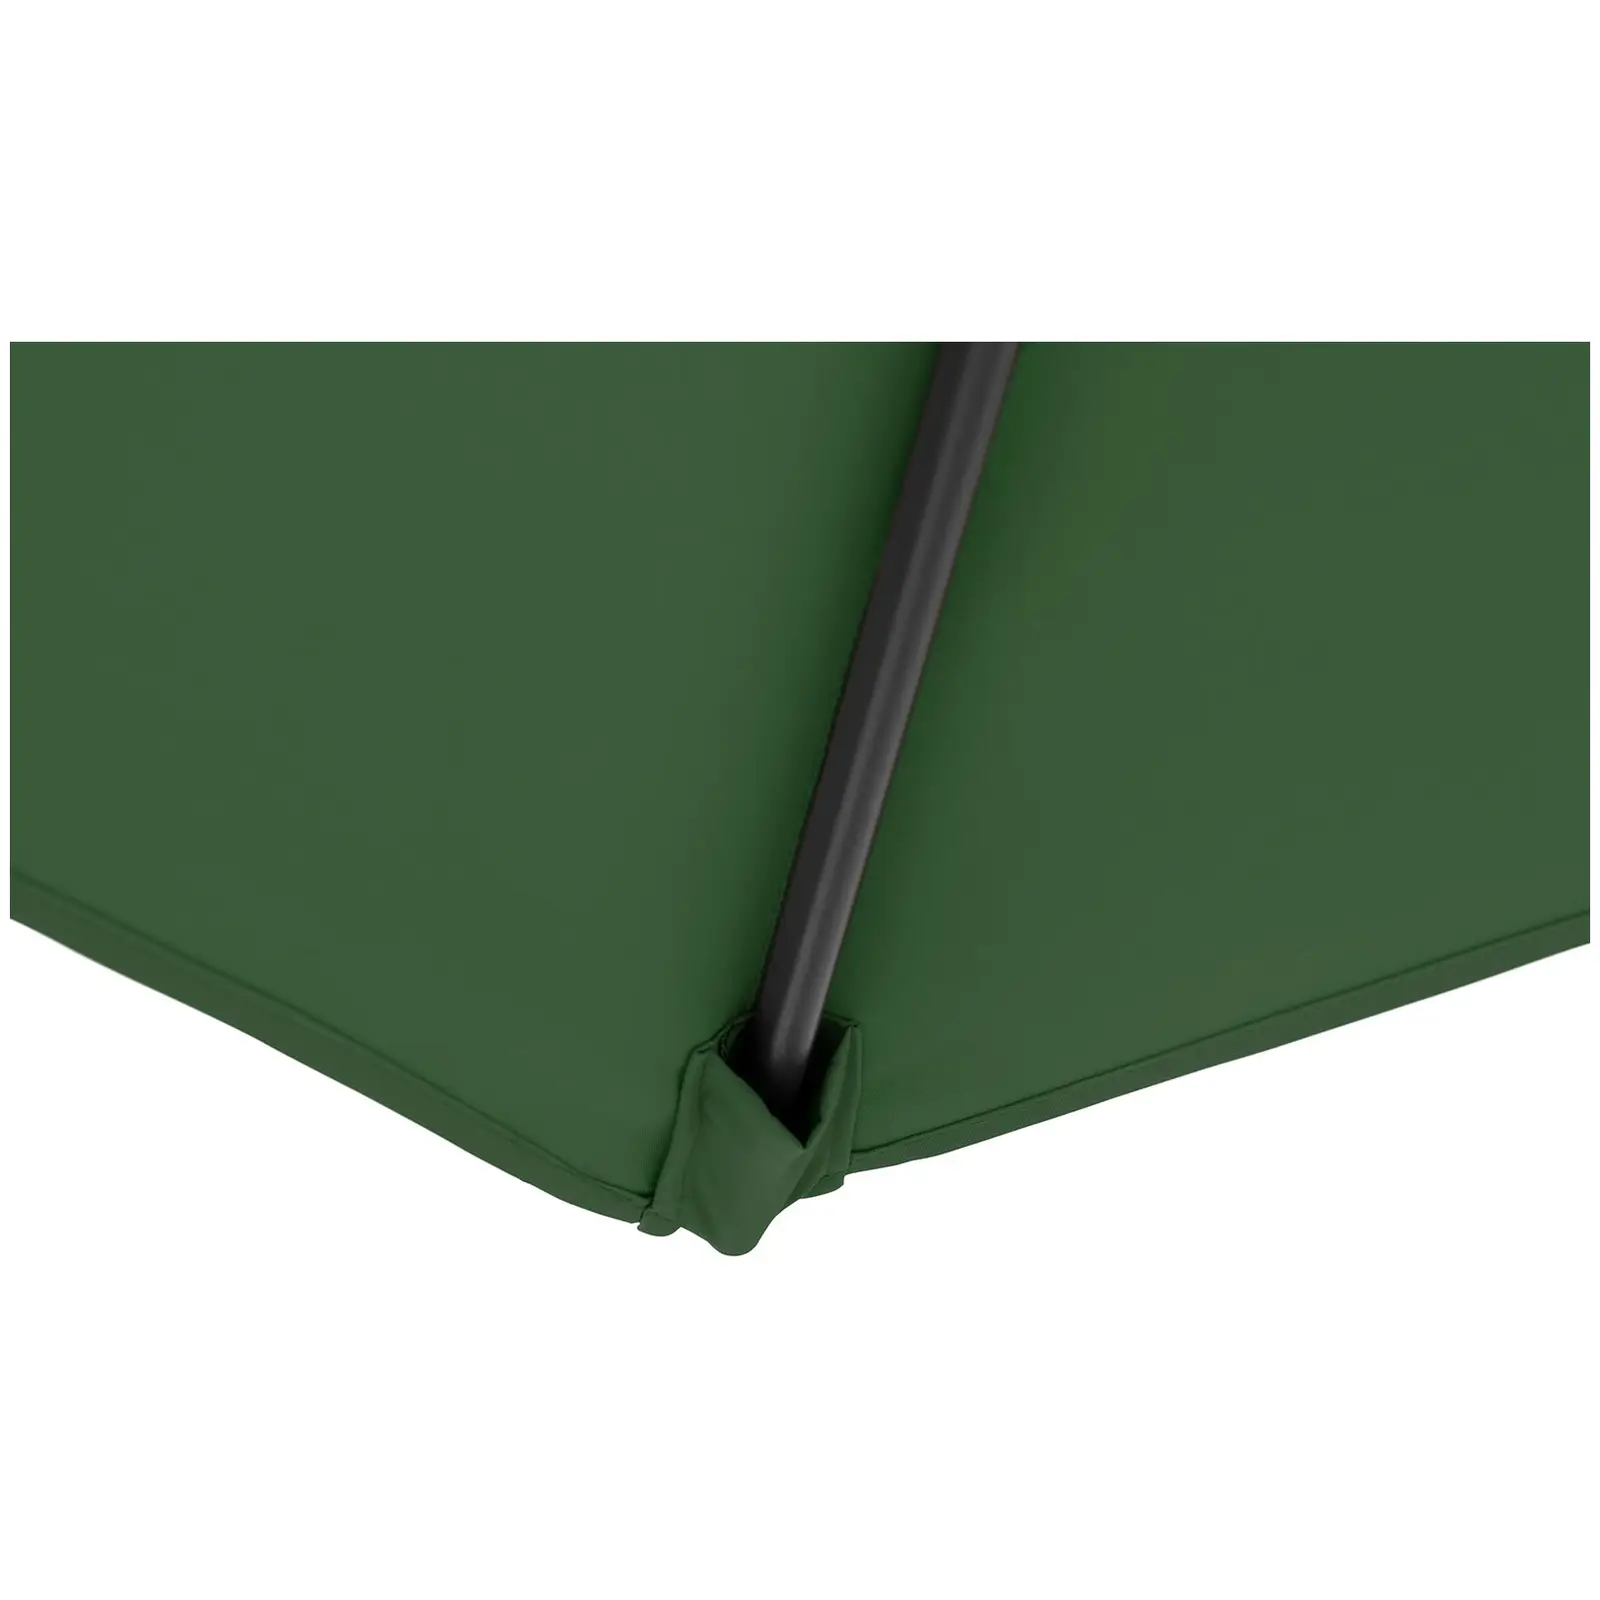 B-zboží Boční slunečník - zelený - čtvercový - 250 x 250 cm - s náklonem